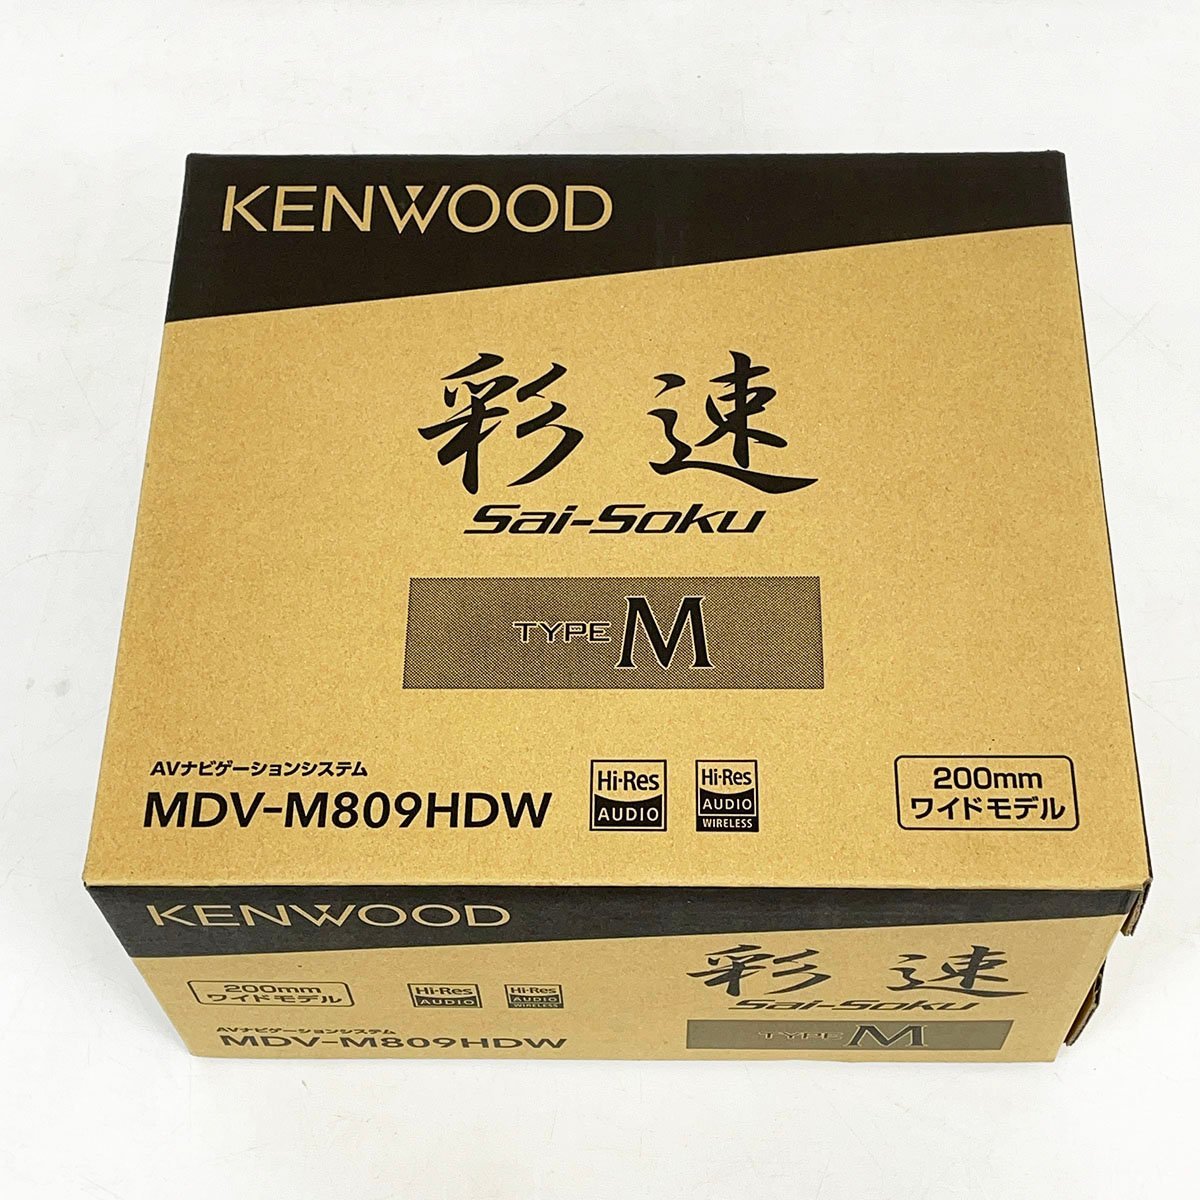 未使用品 KENWOOD ケンウッド カーナビ 彩速ナビ MDV-M809HDW 7V型 200mmワイドモデル TYPE M 2022年製 [C4626]